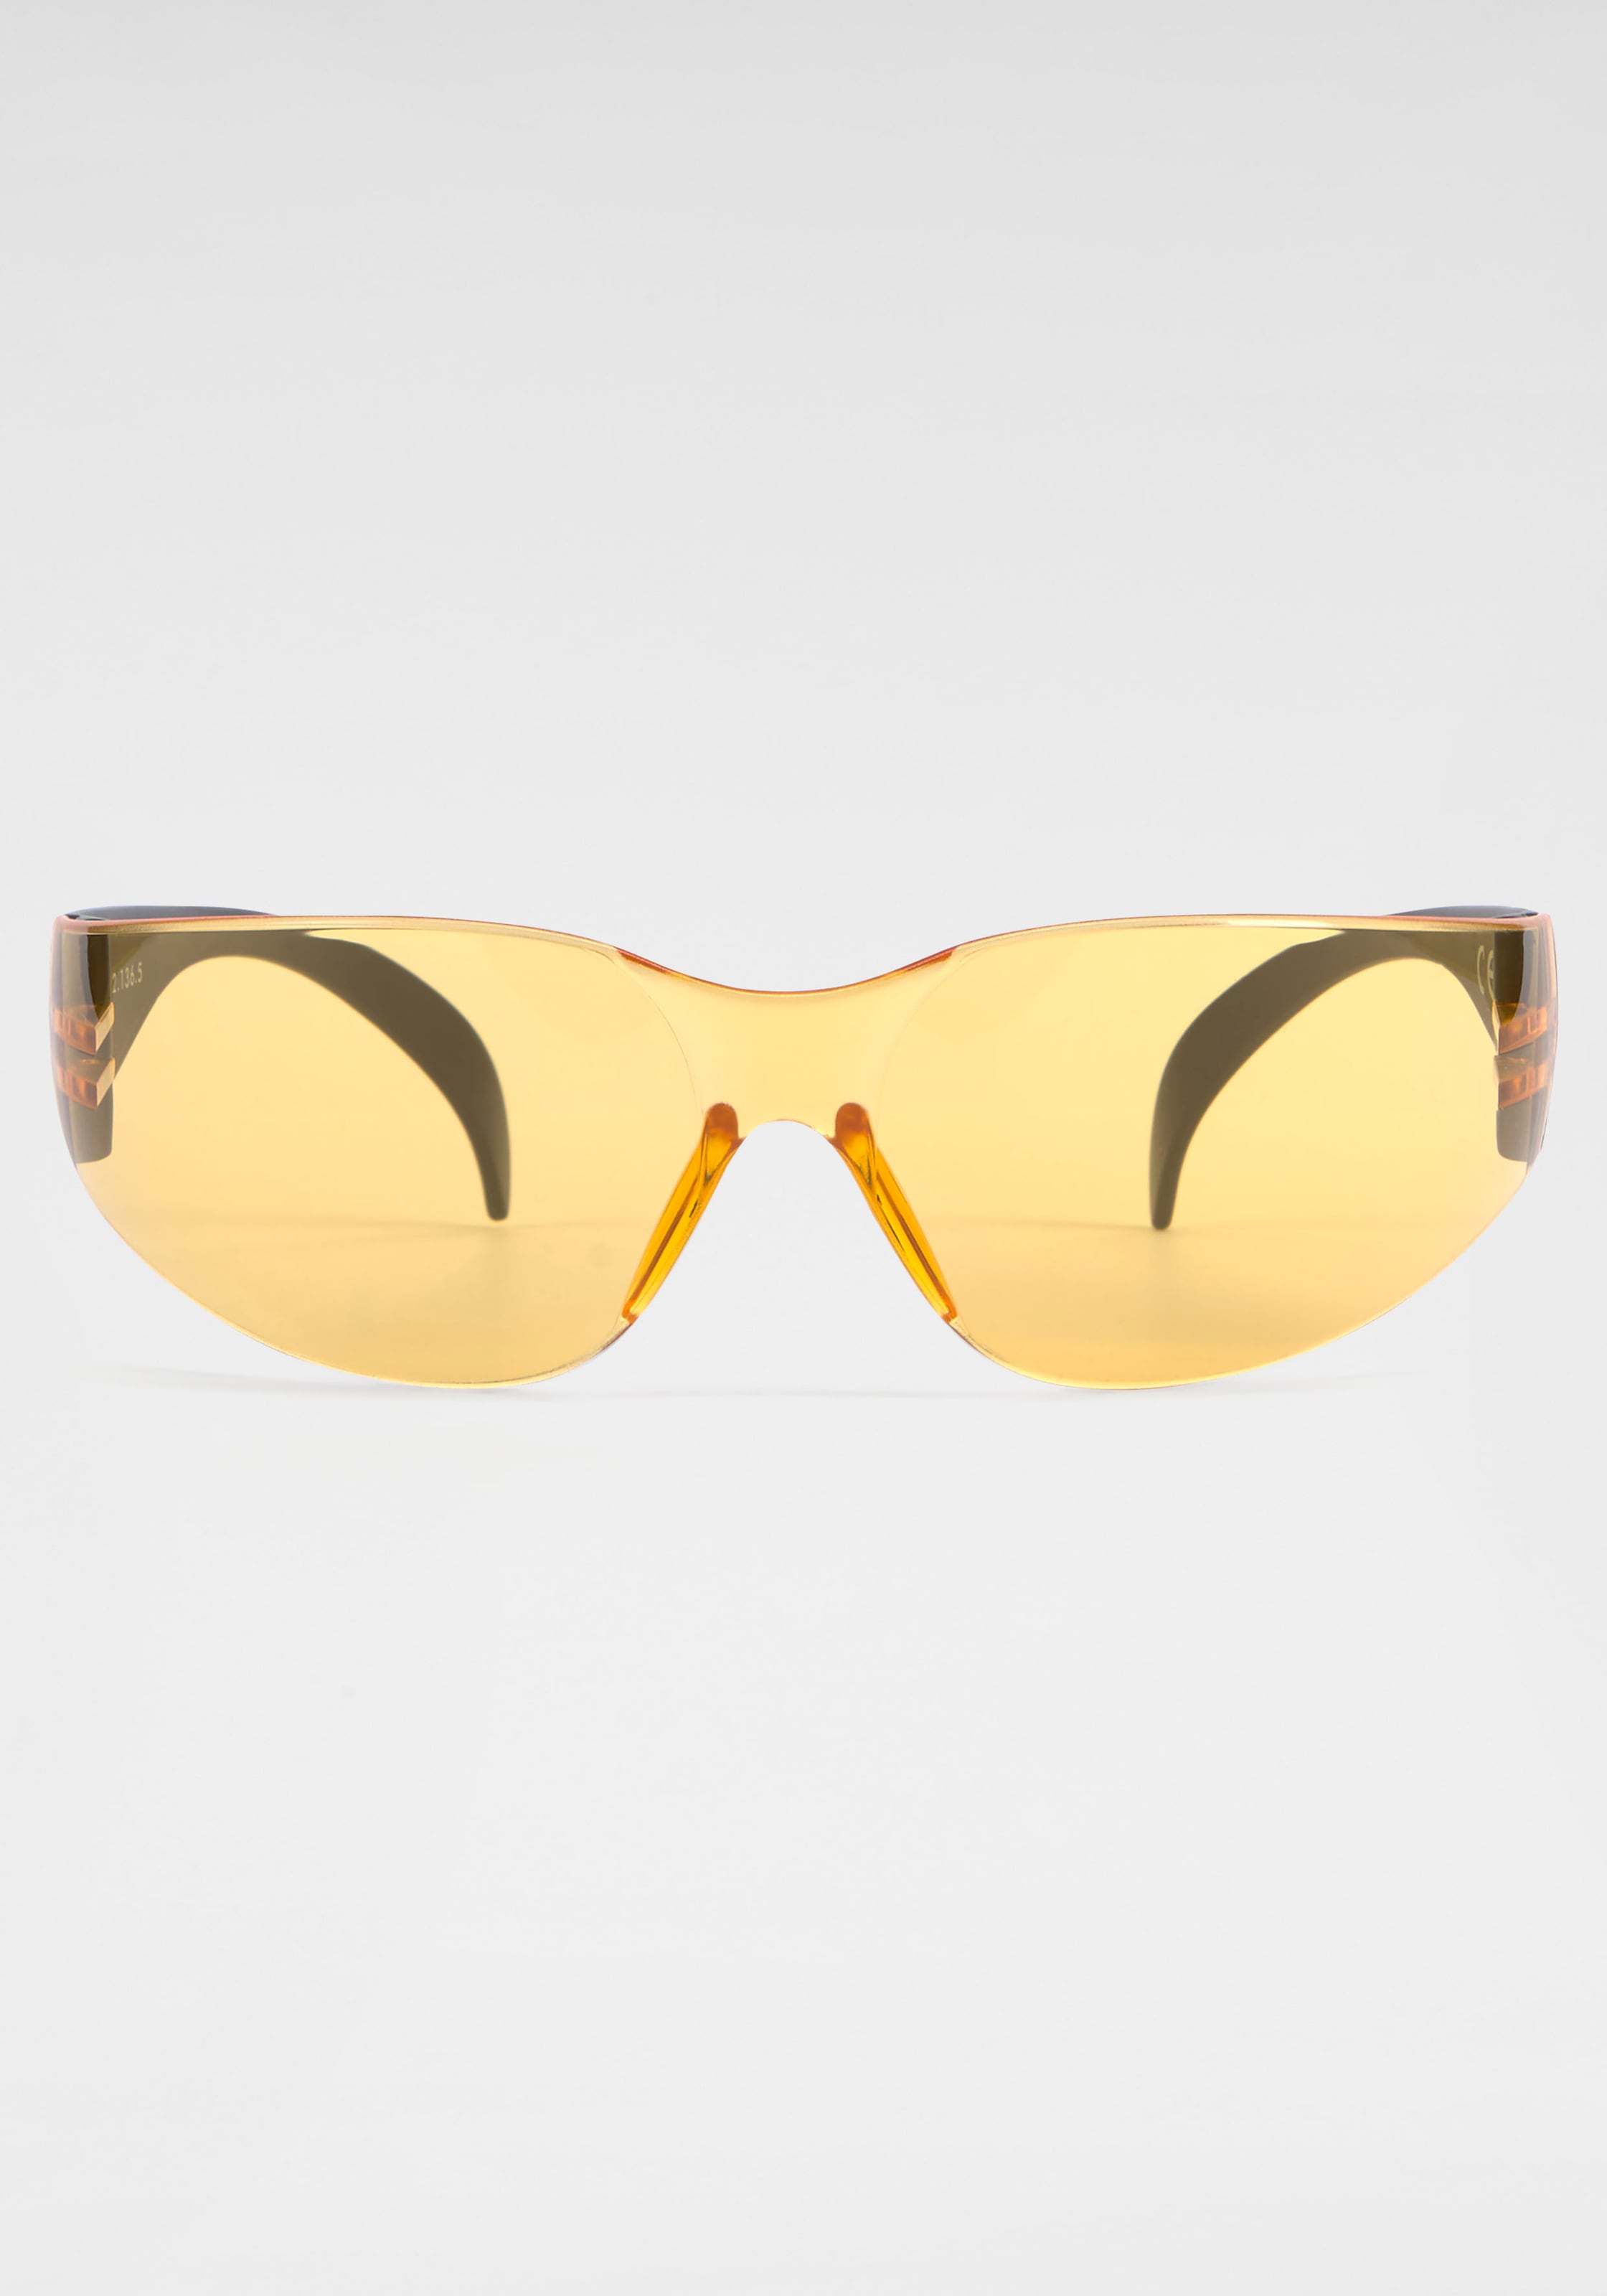 BACK IN BLACK Eyewear Sonnenbrille, Randlos online bestellen